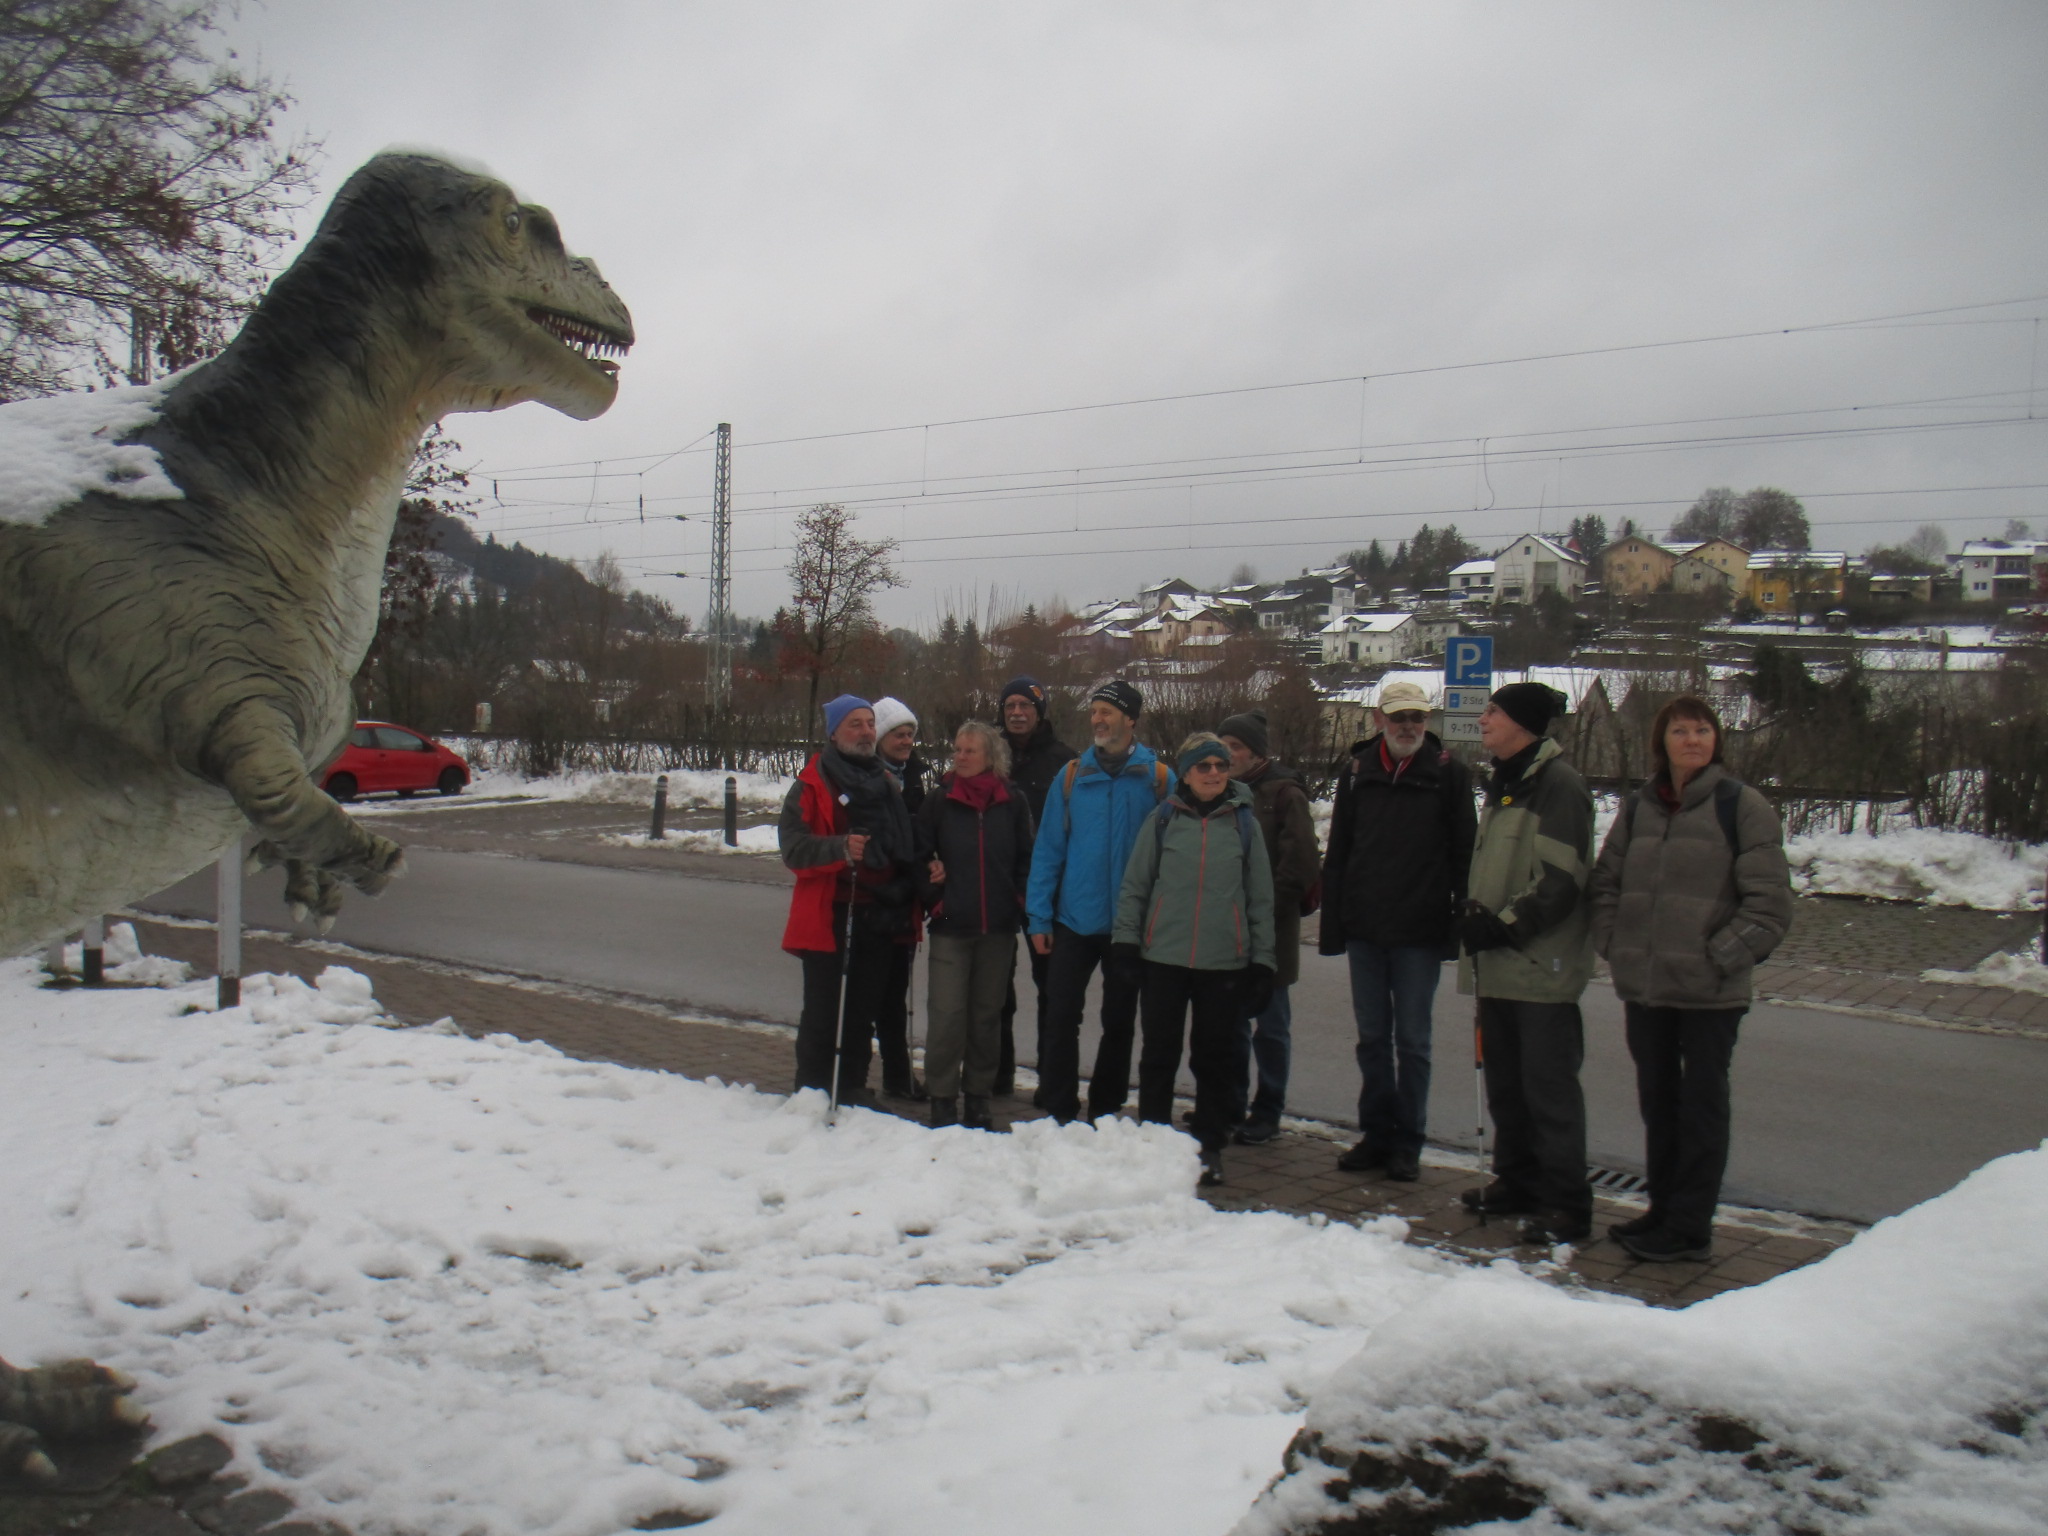 ein über vier Meter hoher Dinosaurier vor dem Solnhofer Museum. Unsere Gruppe steht daneben, ohne Angst vor dem aufgerissenen Maul des Giganten.